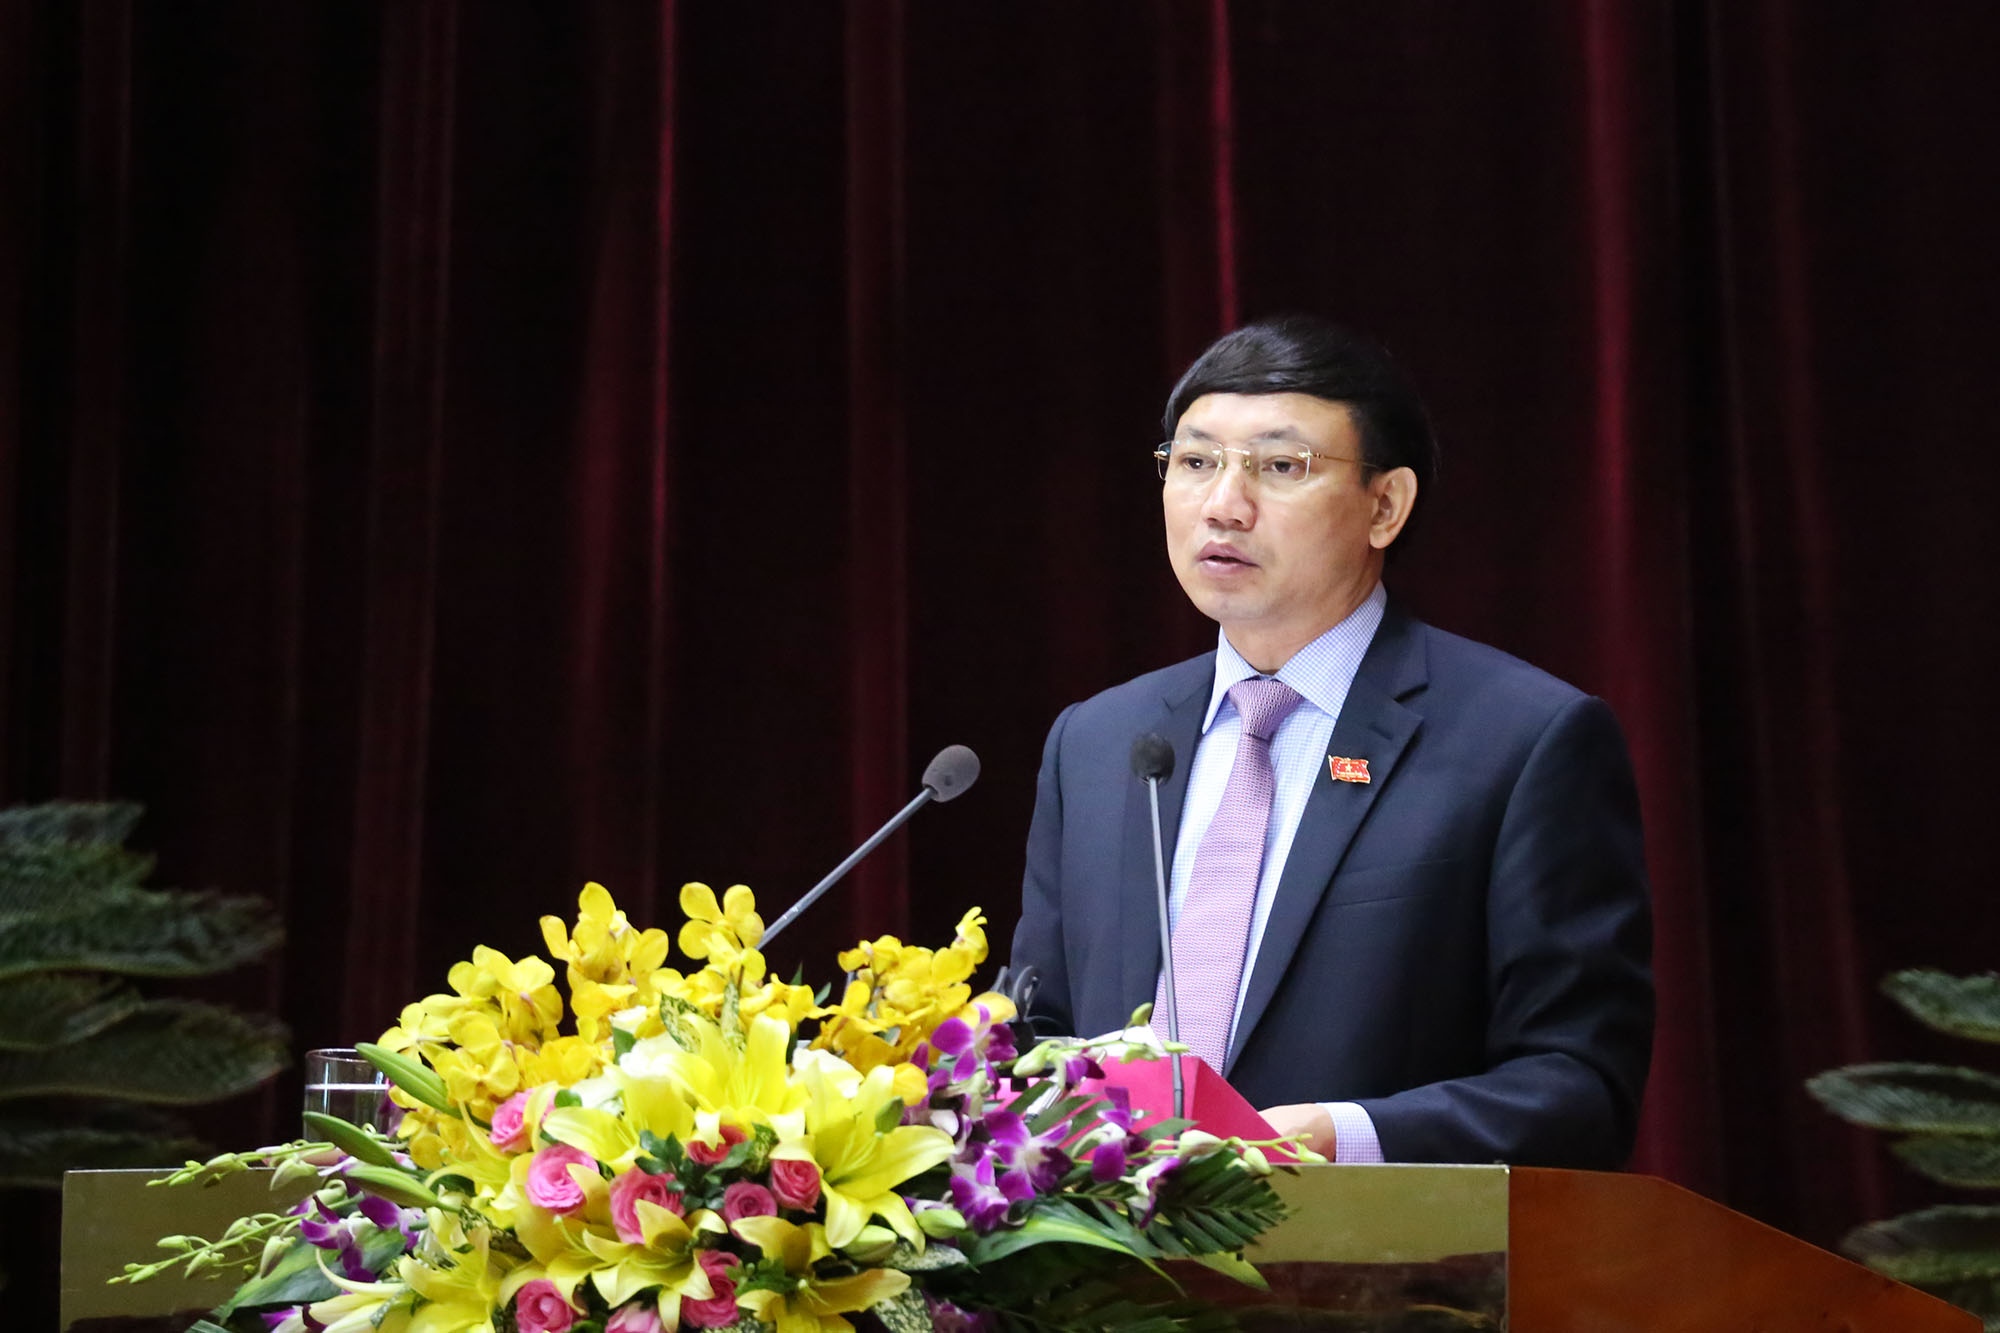 Đồng chí Nguyễn Xuân Ký, Phó chủ tịch thường trực HĐND tỉnh trình bày tờ trình Kế hoạch các kỳ họp HĐND năm 2019